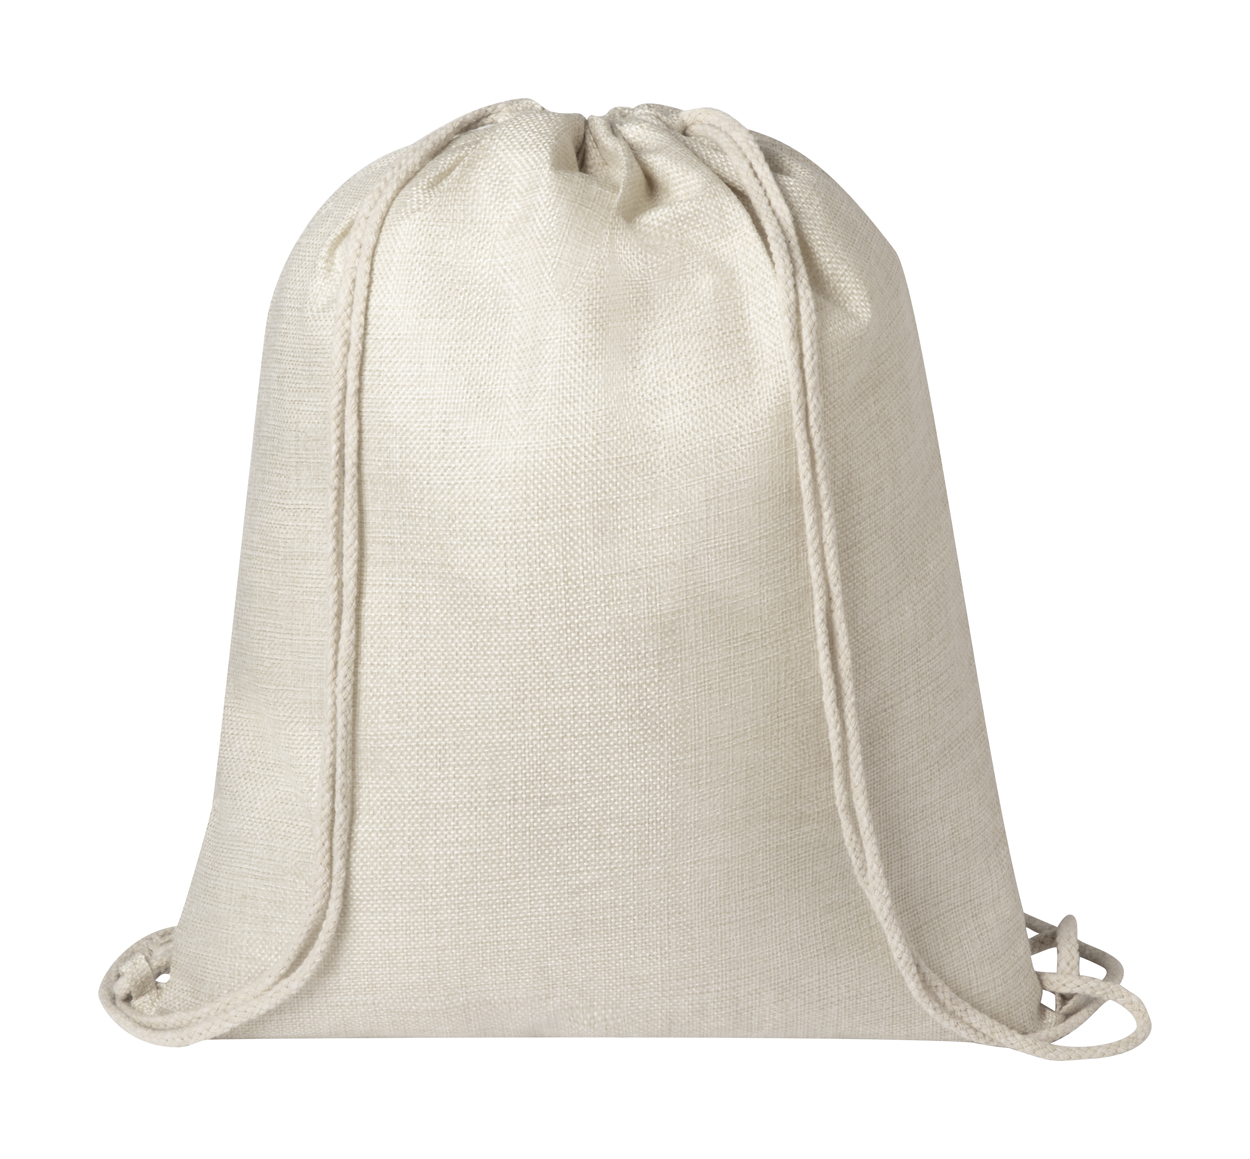 Polyesterový šňůrkový batoh LIZCOM vhodný pro potisk sublimací - béžová